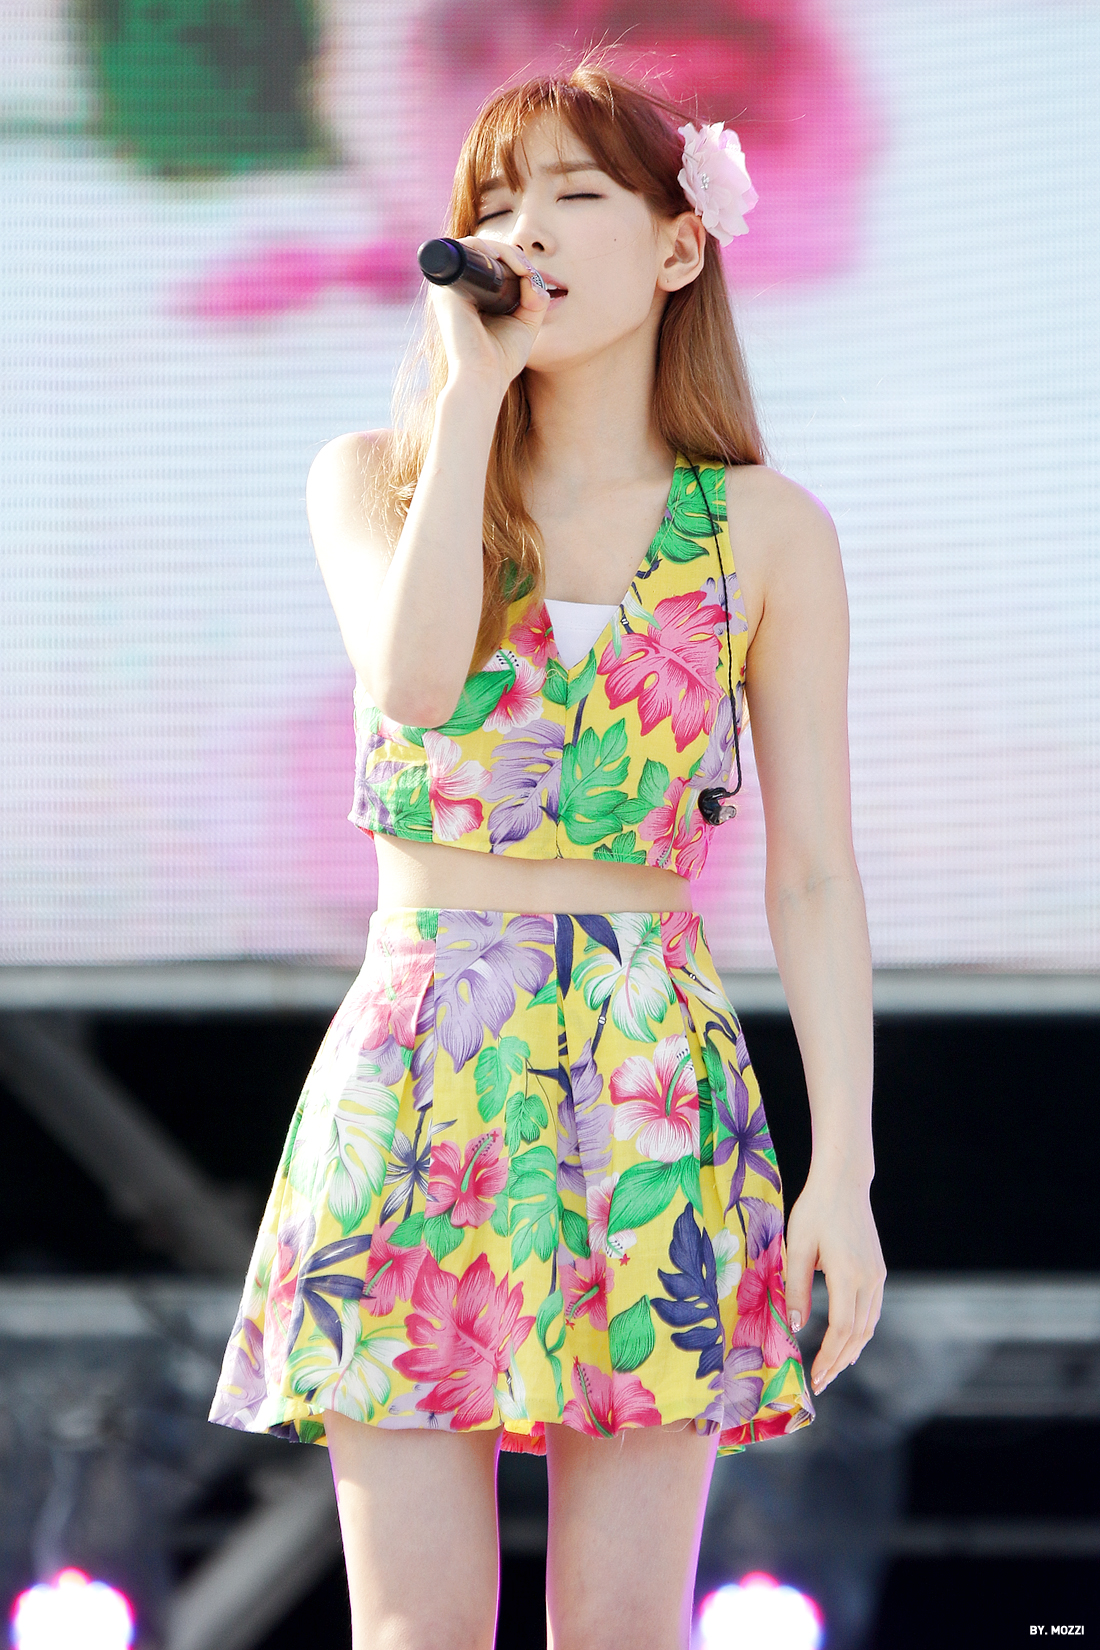 [PIC][30-07-2014]TaeTiSeo biểu diễn tại "BlueOne WaterPark Kpop Dream Festival" vào chều nay 246BCA3453D907A6290C0F